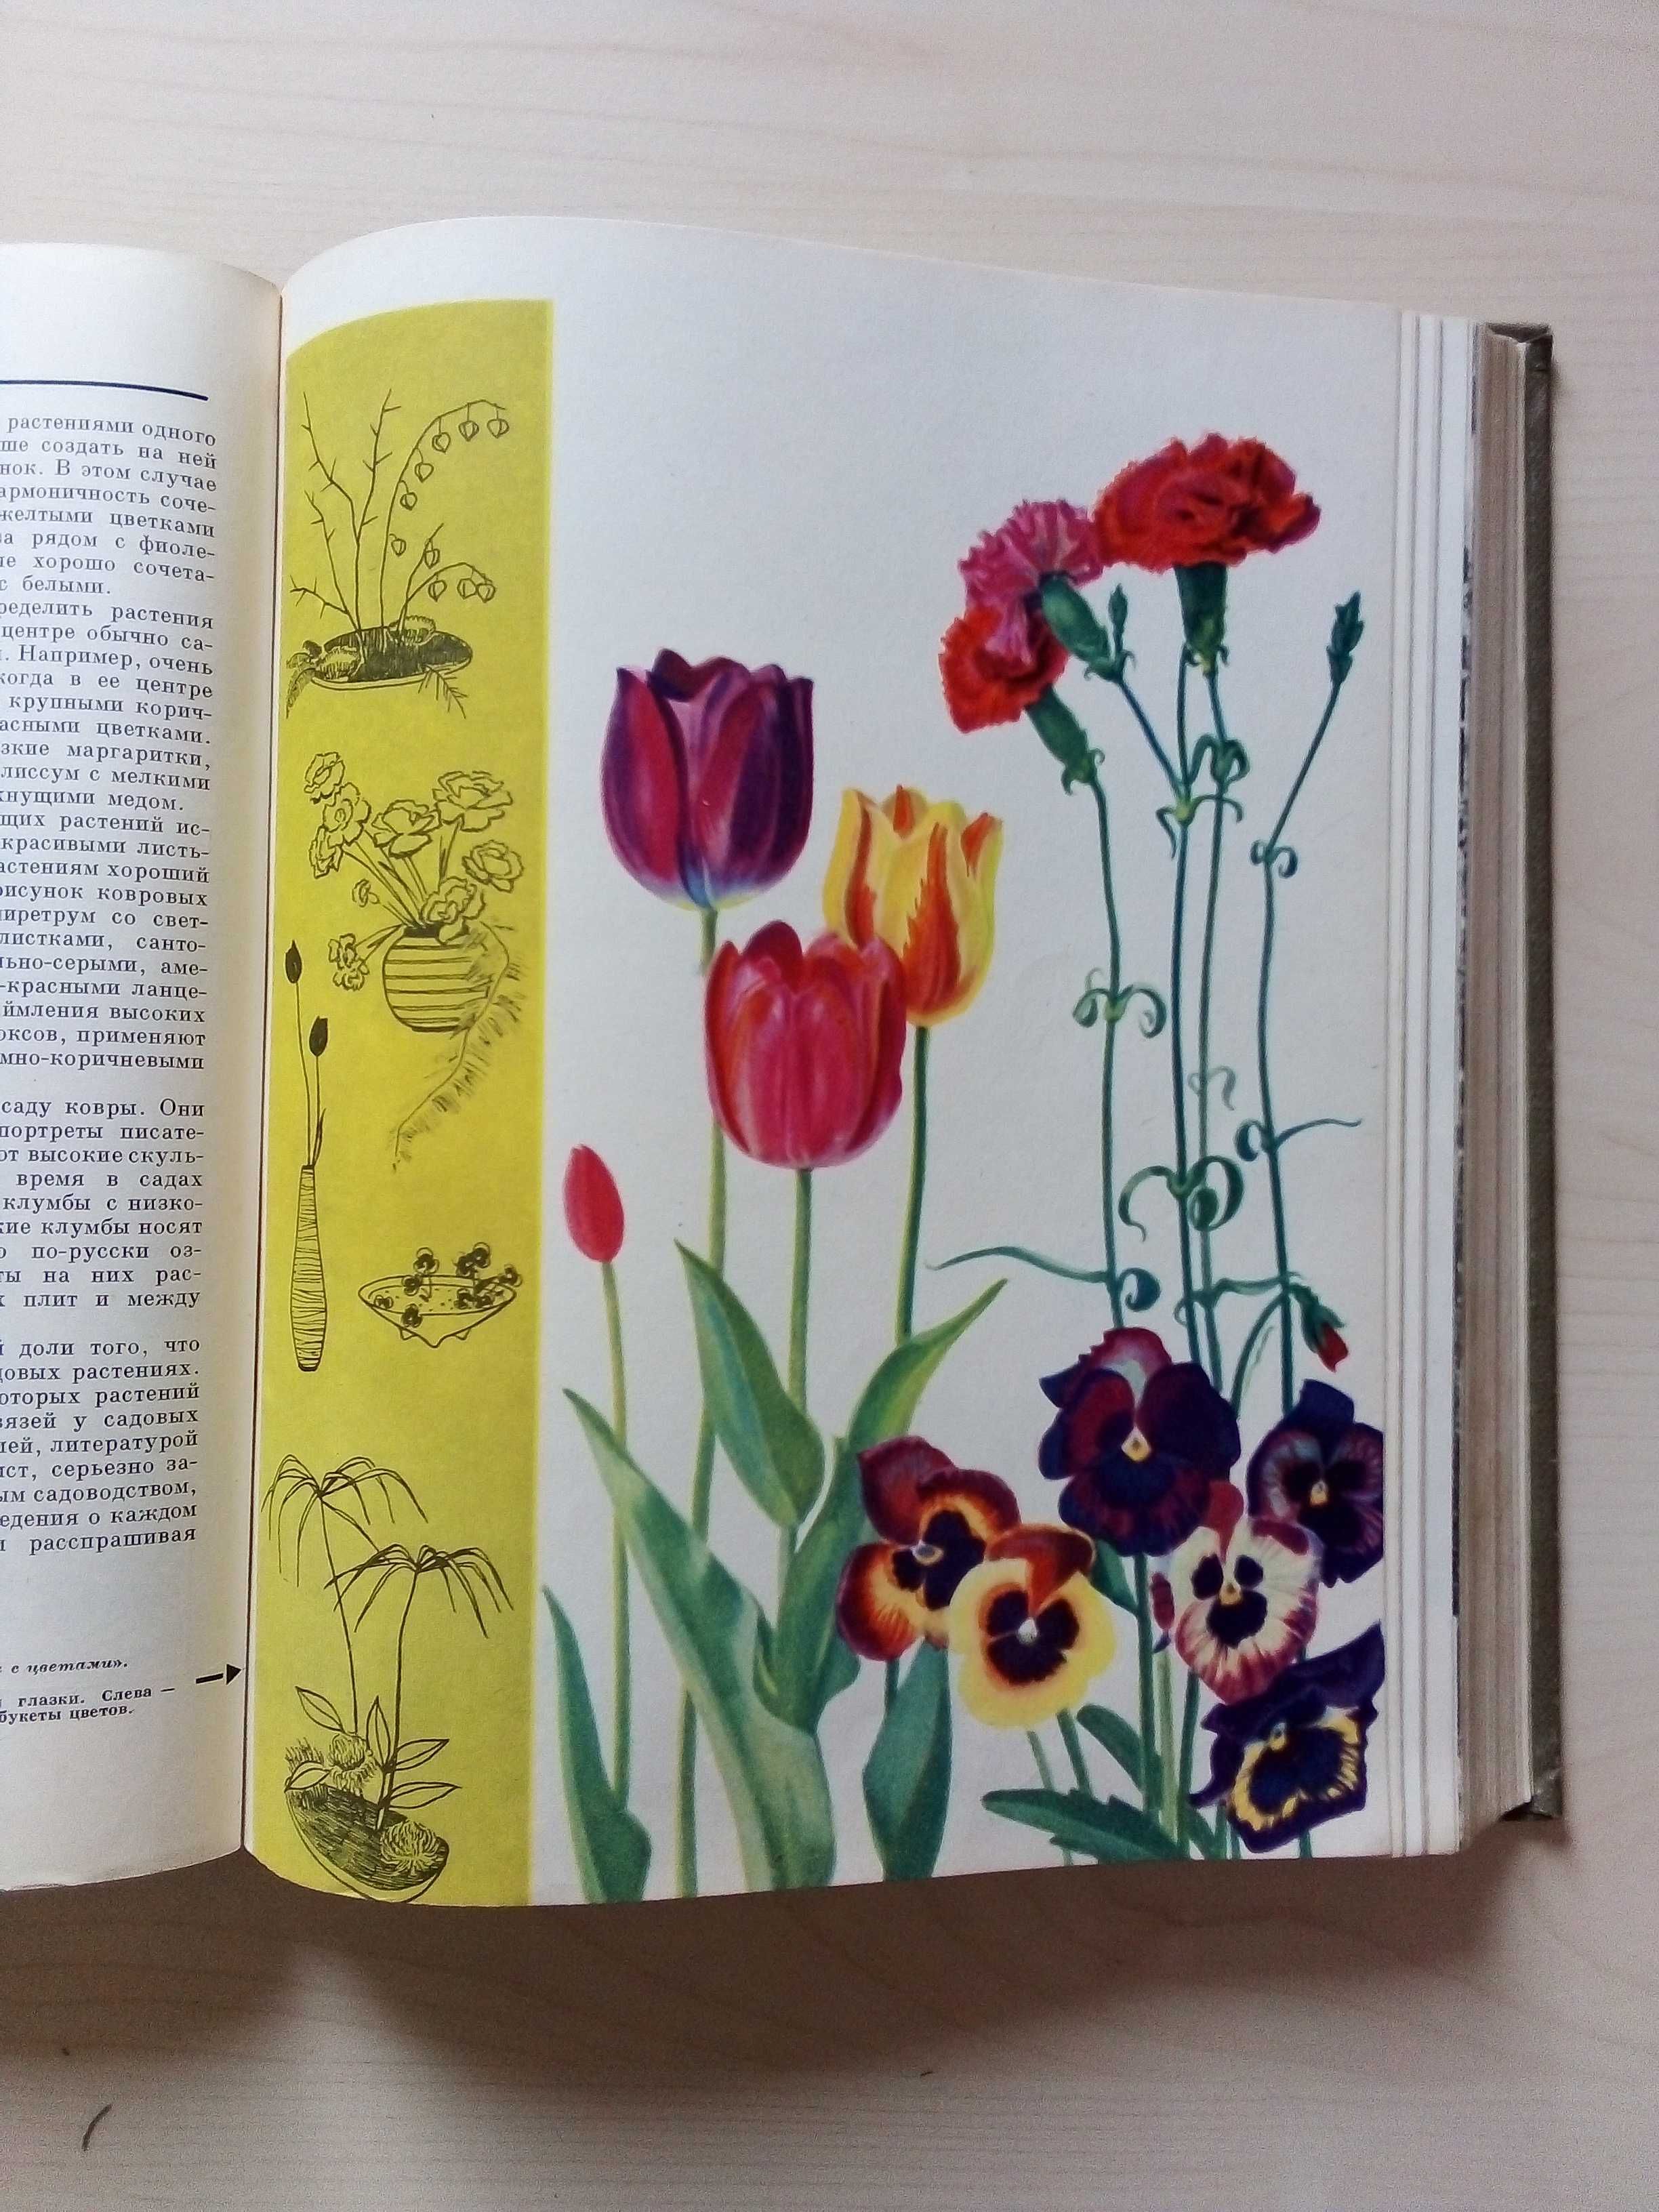 Детская энциклопедия 1965 г. тома 2 и 4